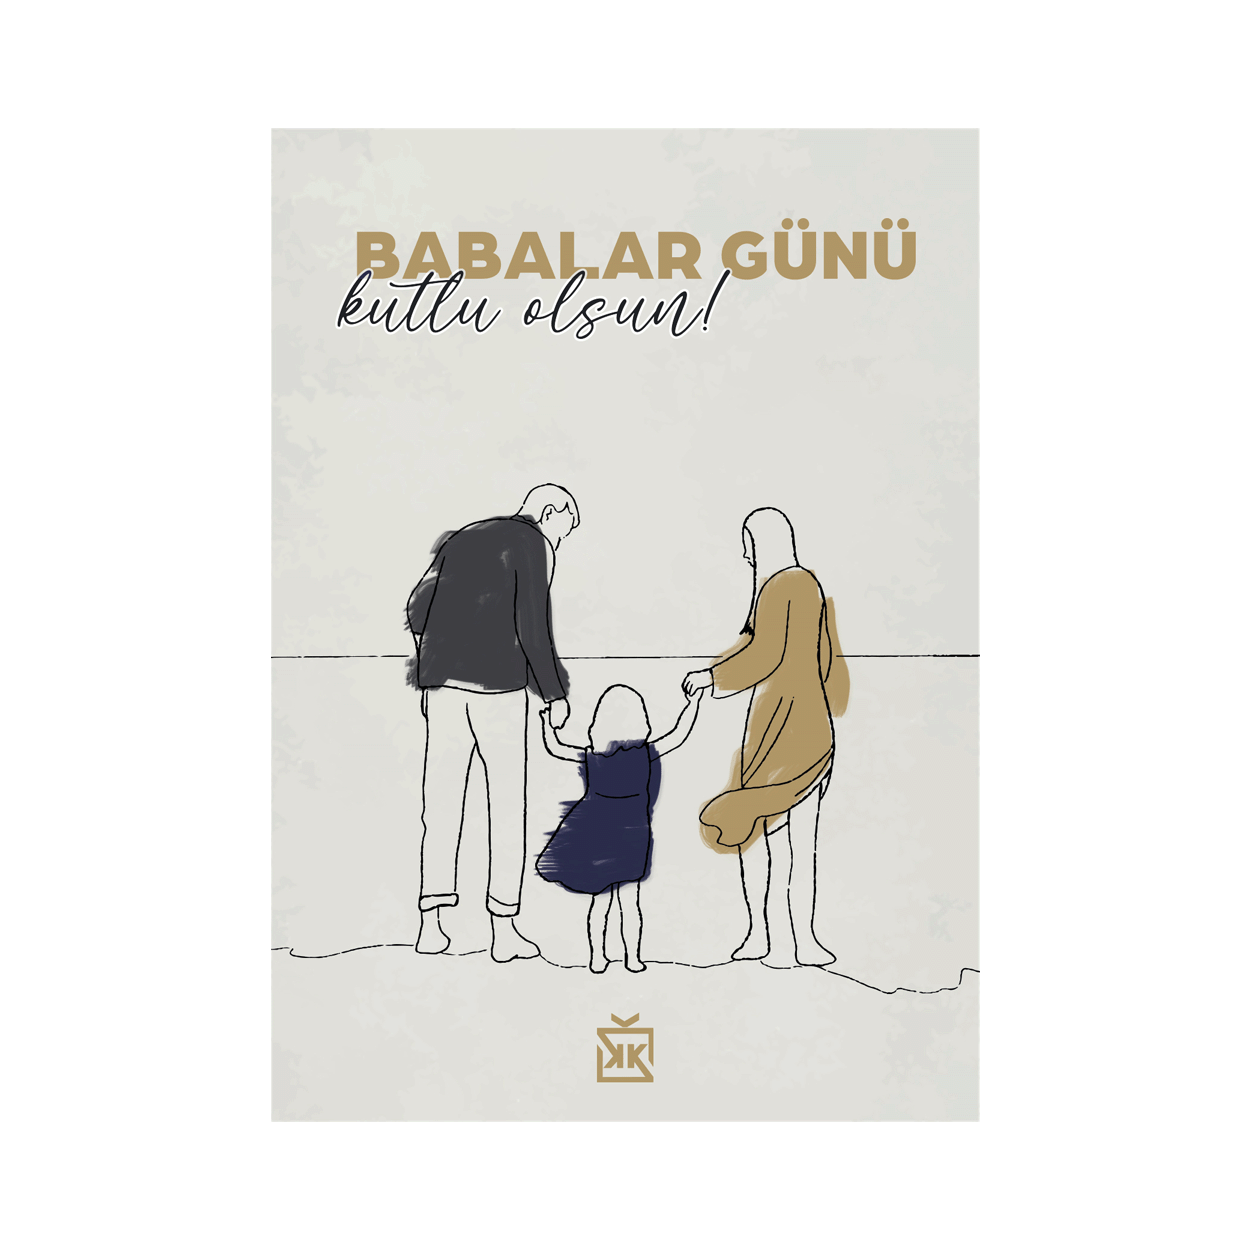 590726-babalar-gunu-motto-karti